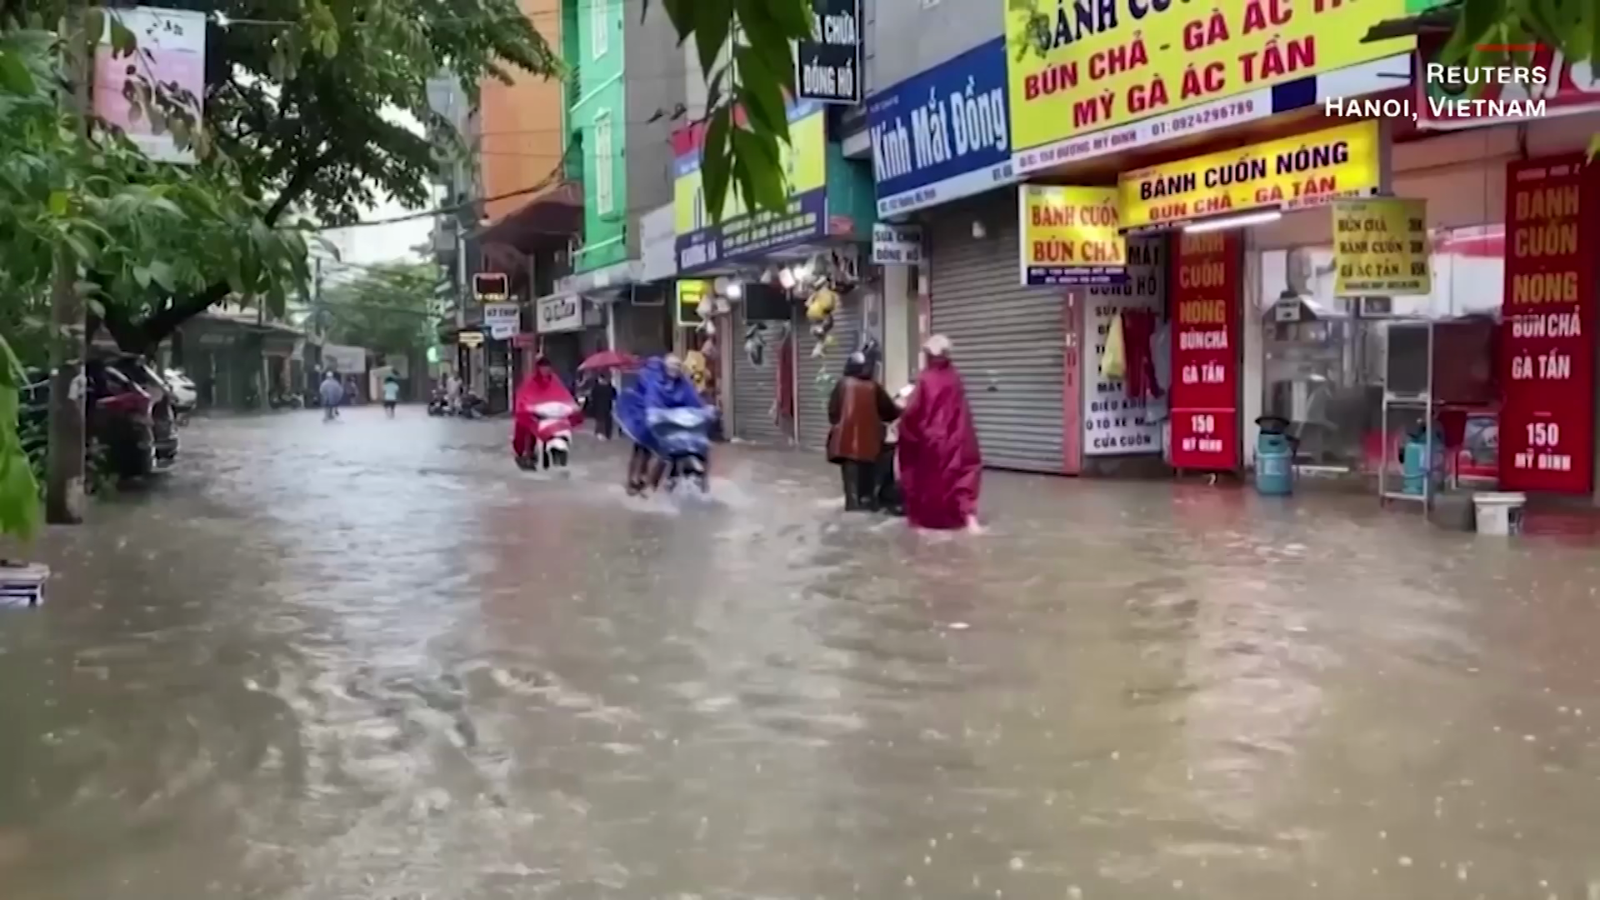 Impactantes imágenes muestran las inundaciones tras las intensas
lluvias en la capital de Vietnam